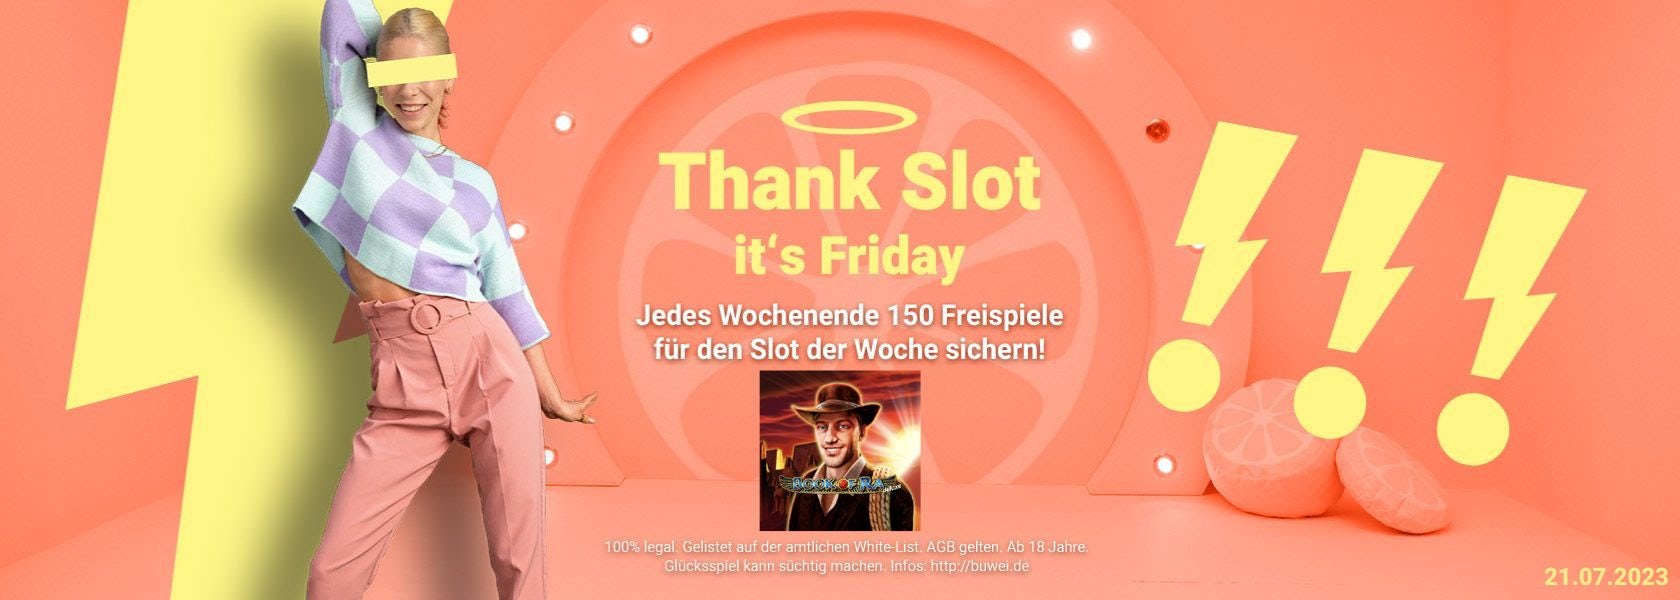 Thank Slot it's Friday am 21.07.2023 bei BingBong.de